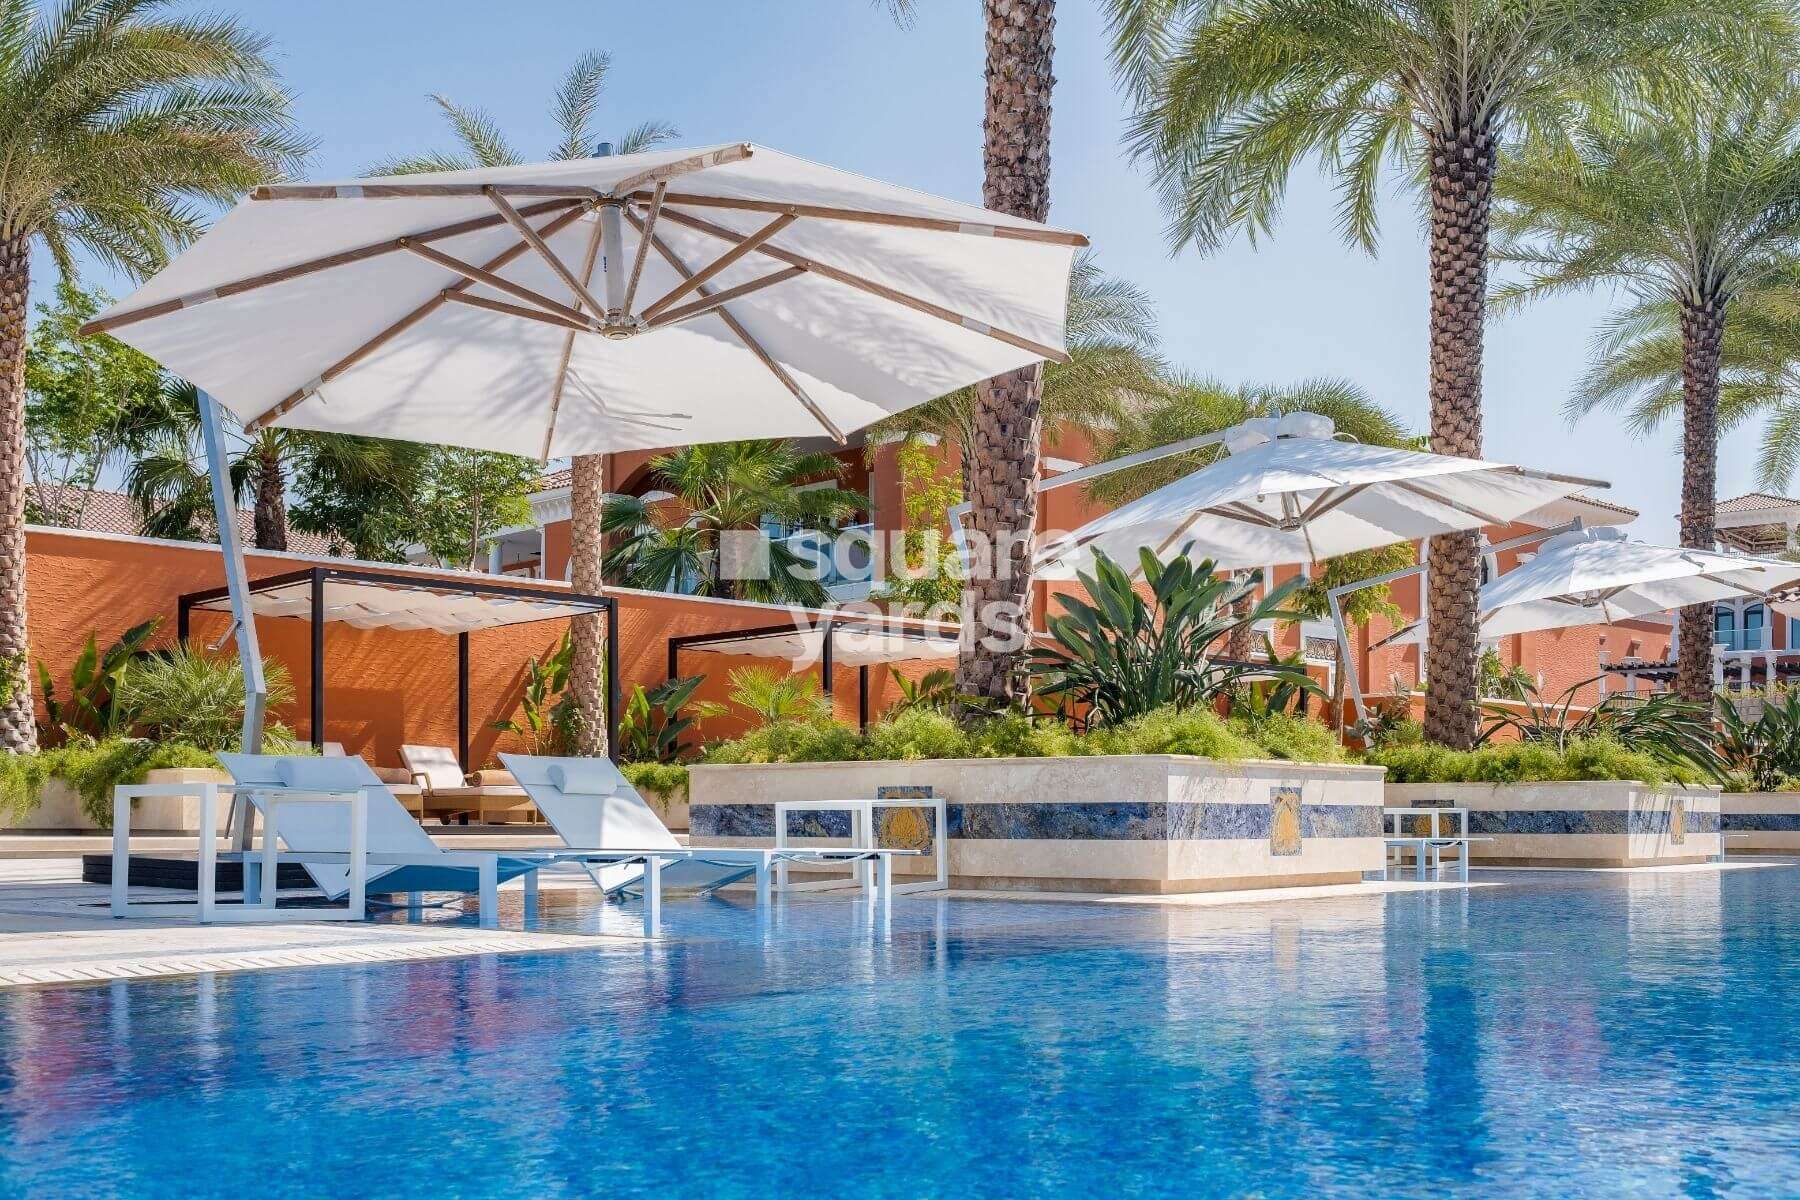 22 carat penthouse palm jumeirah project amenities features6